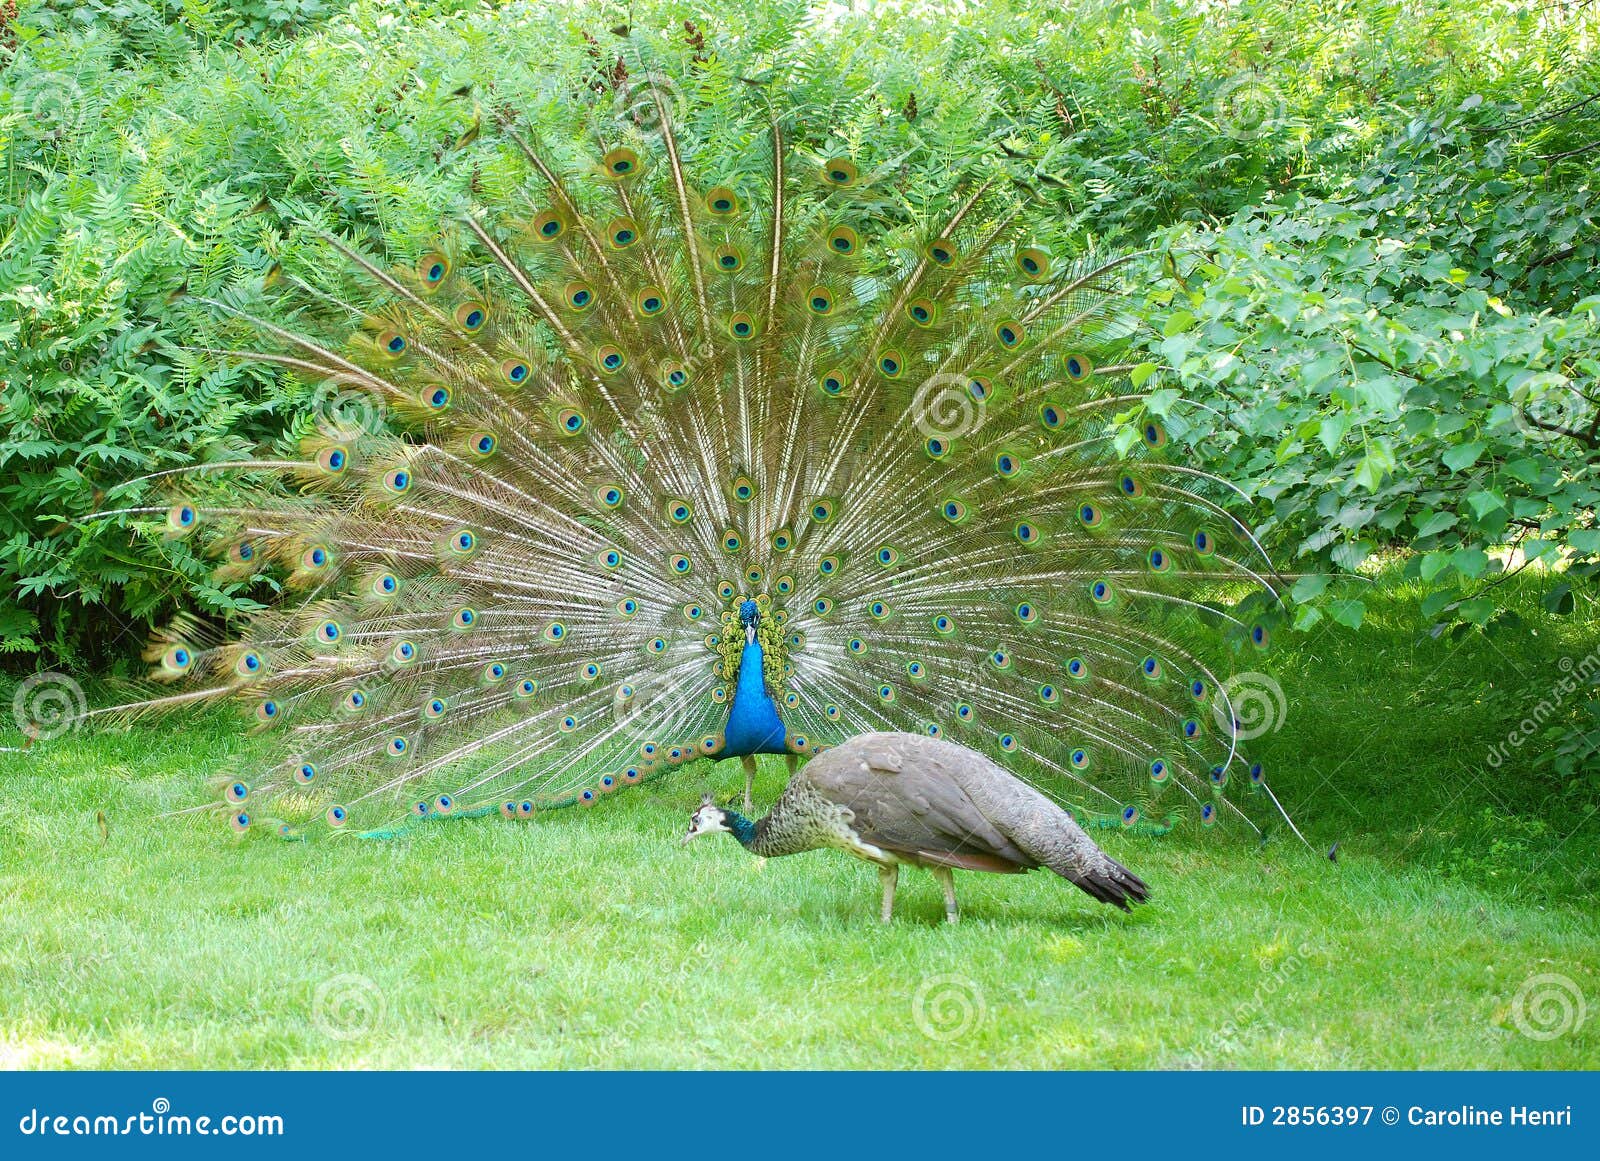 tempting peacock 4